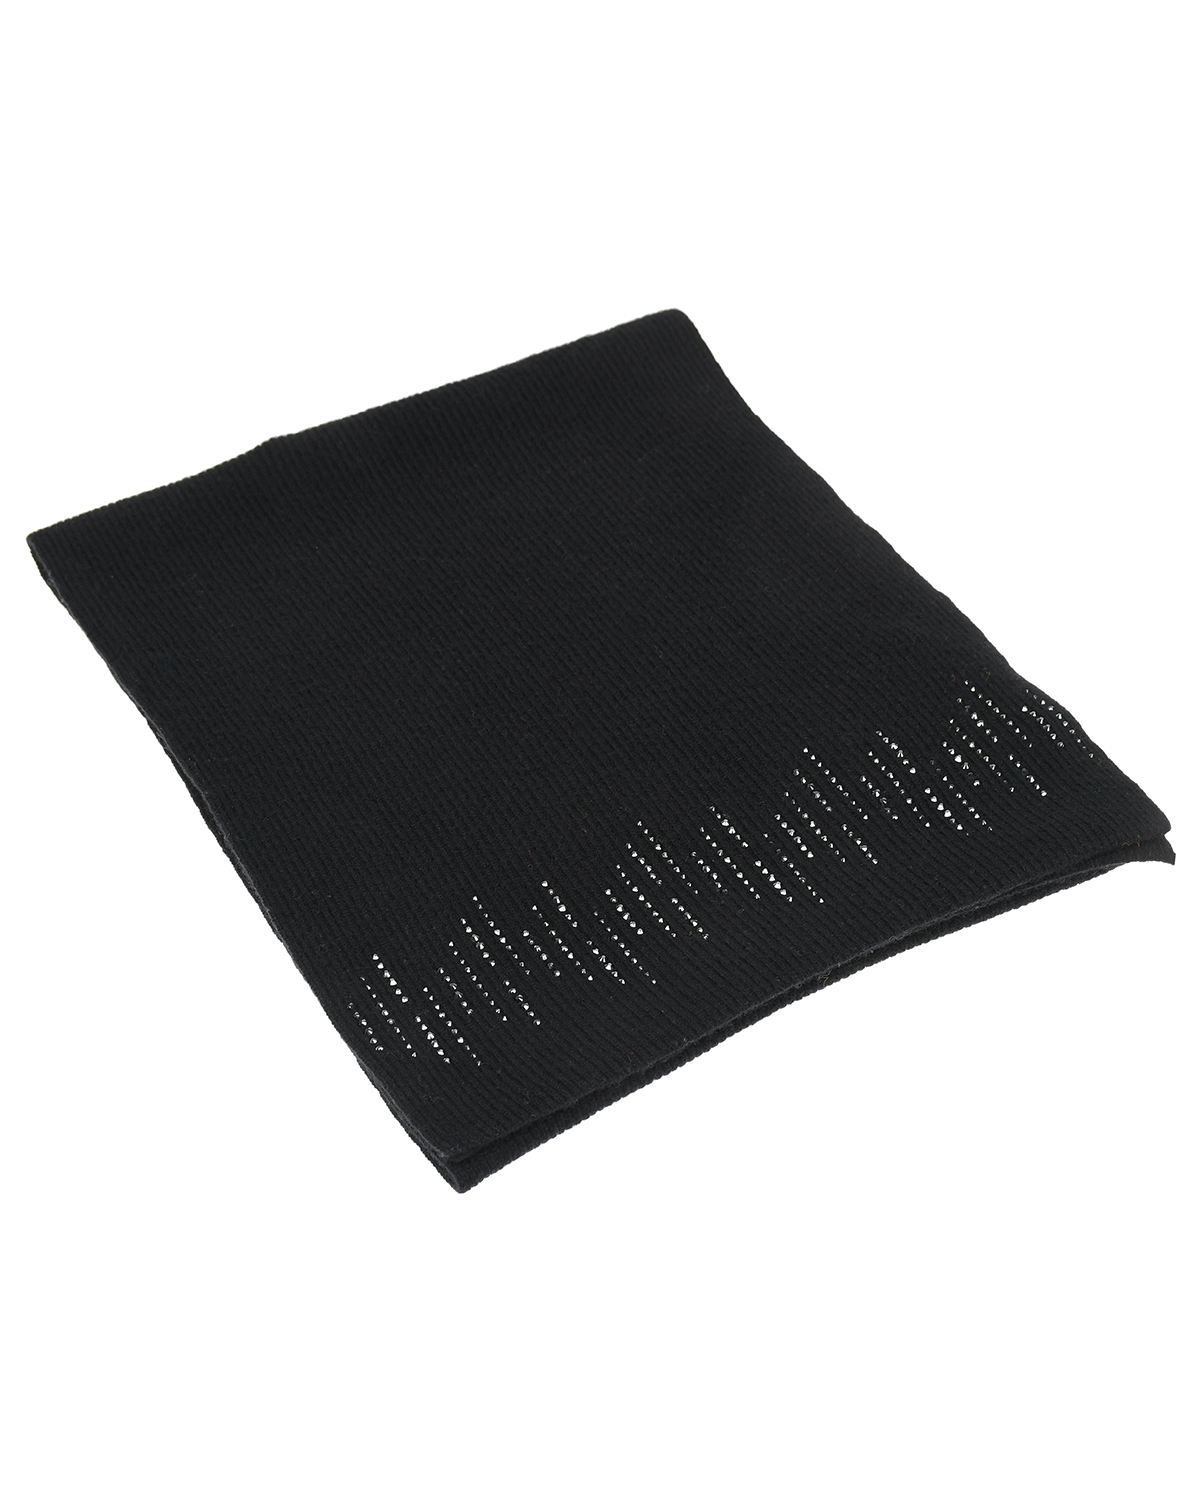 Черный кашемировый шарф с кристаллами Swarovski, 168х33 см William Sharp, размер unica